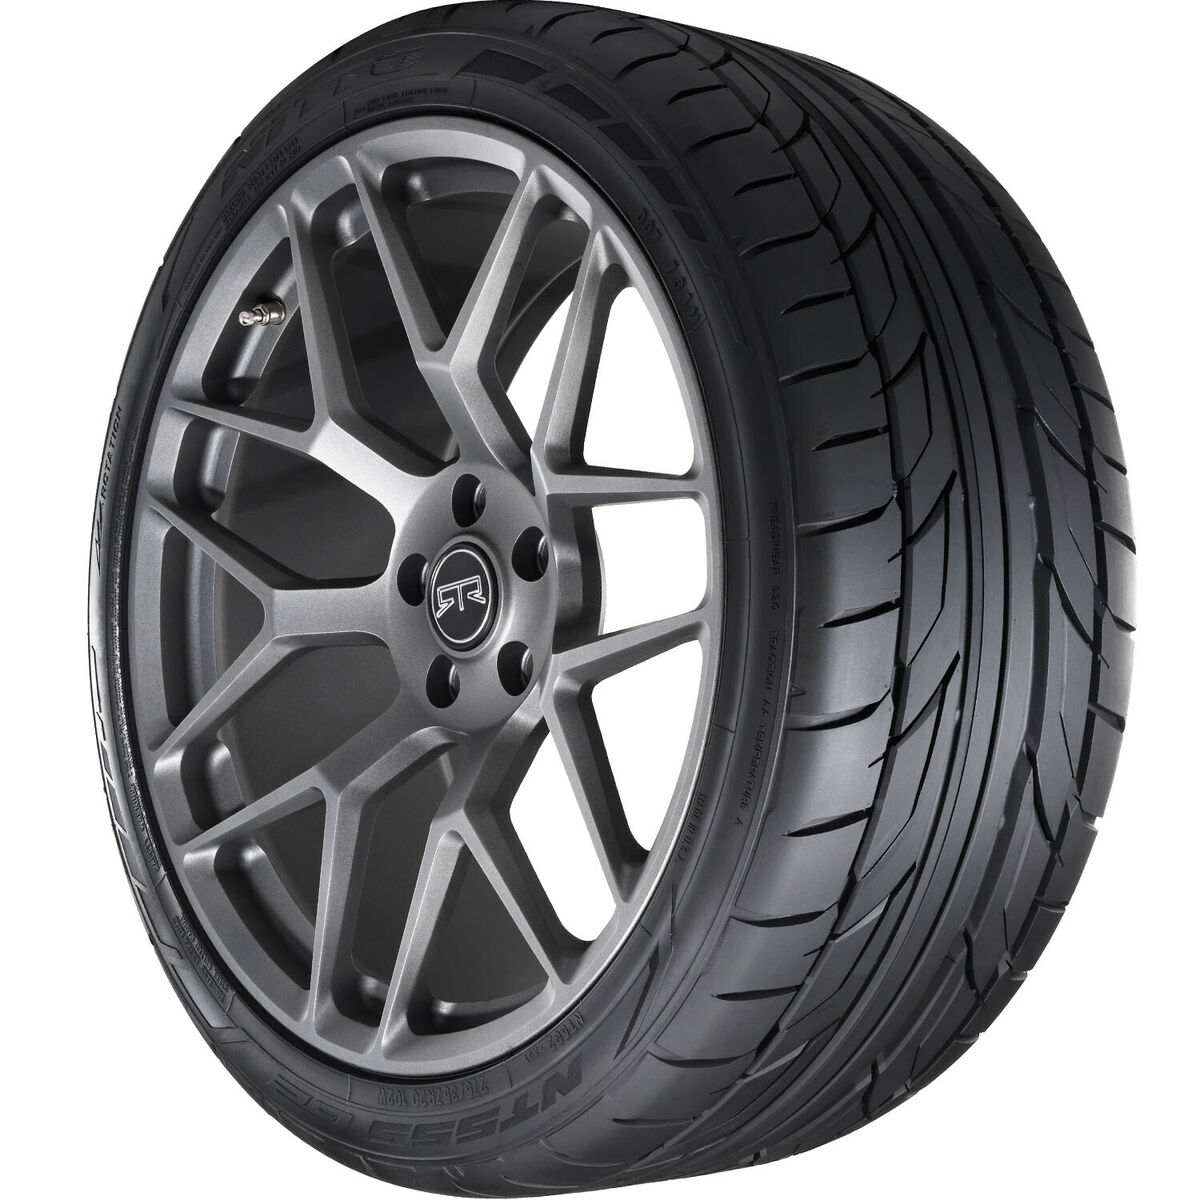 2 New Nitto Nt555 G2 - 245/40zr18 Tires 2454018 245 40 18 | eBay